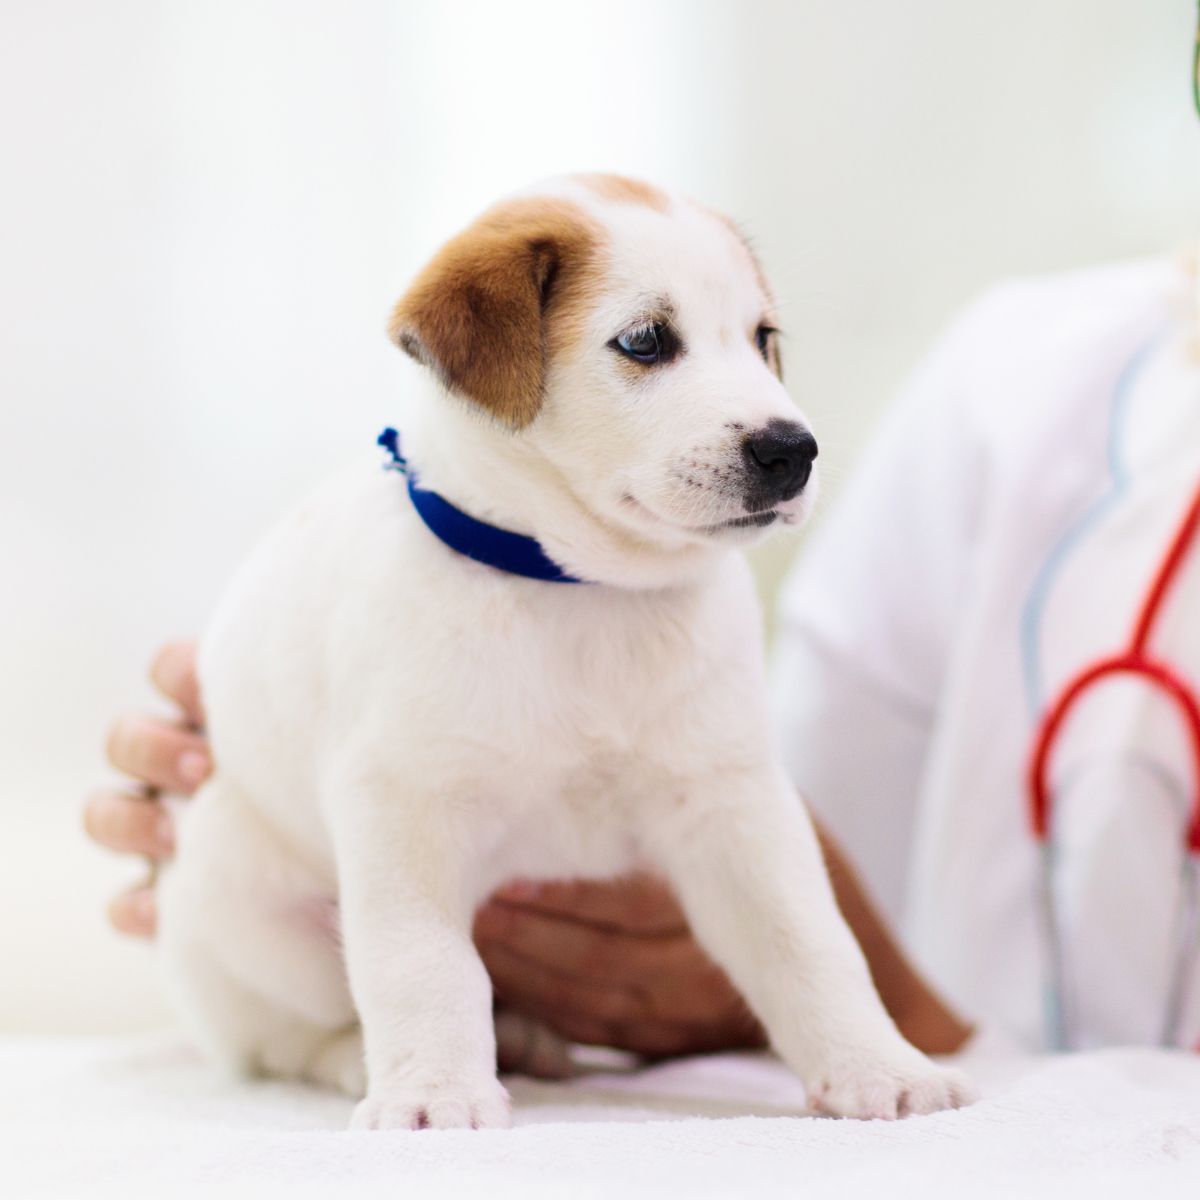 a vet examining a puppy